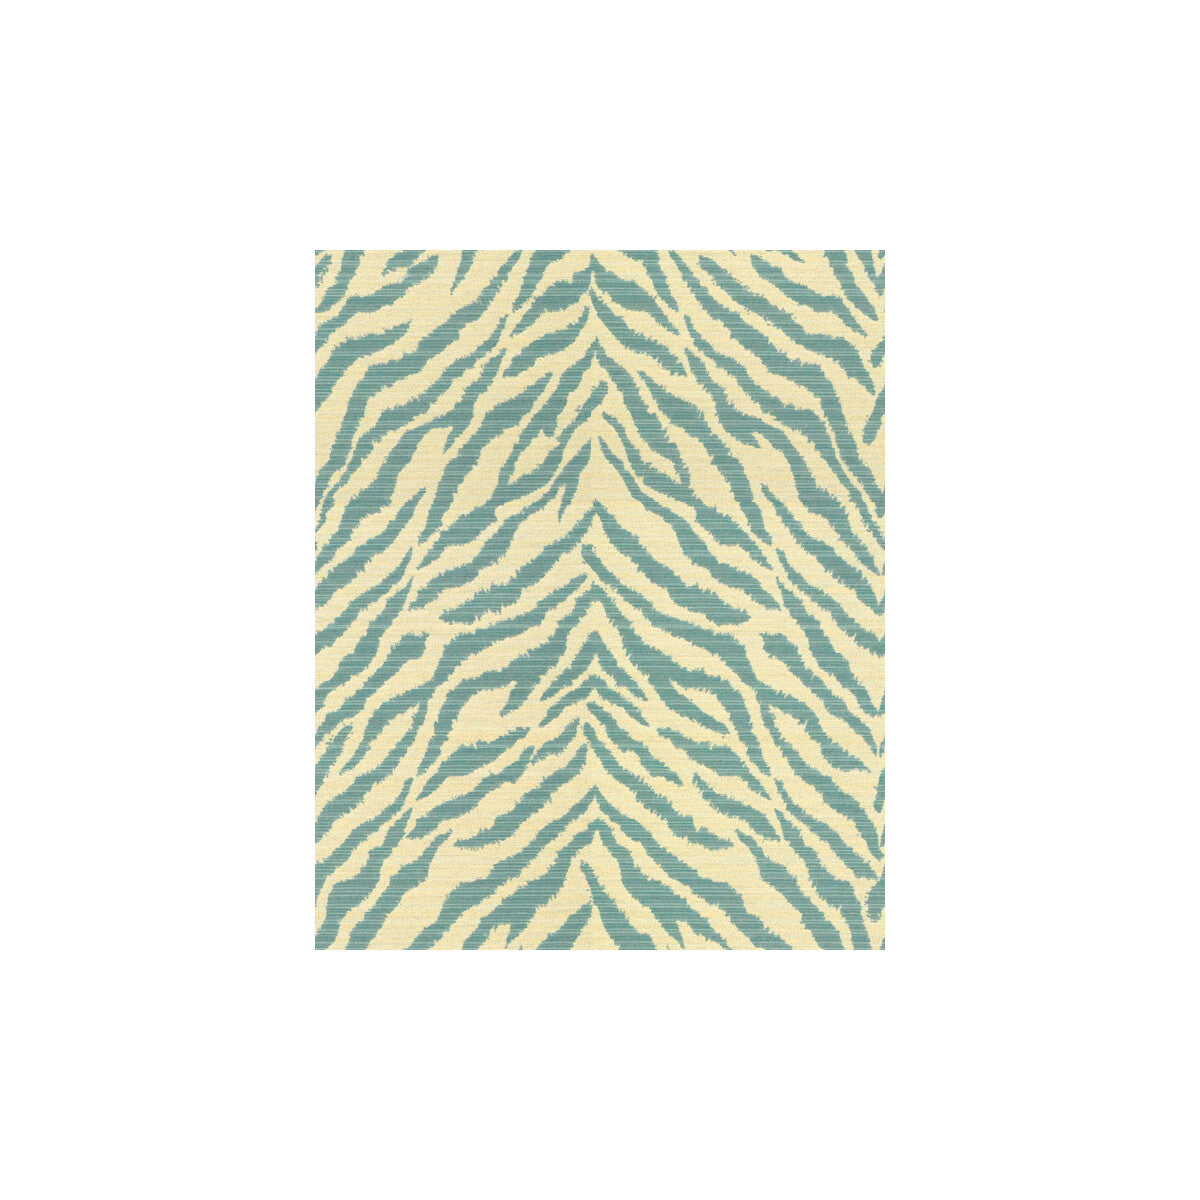 Kravet Design fabric in 32081-5 color - pattern 32081.5.0 - by Kravet Design